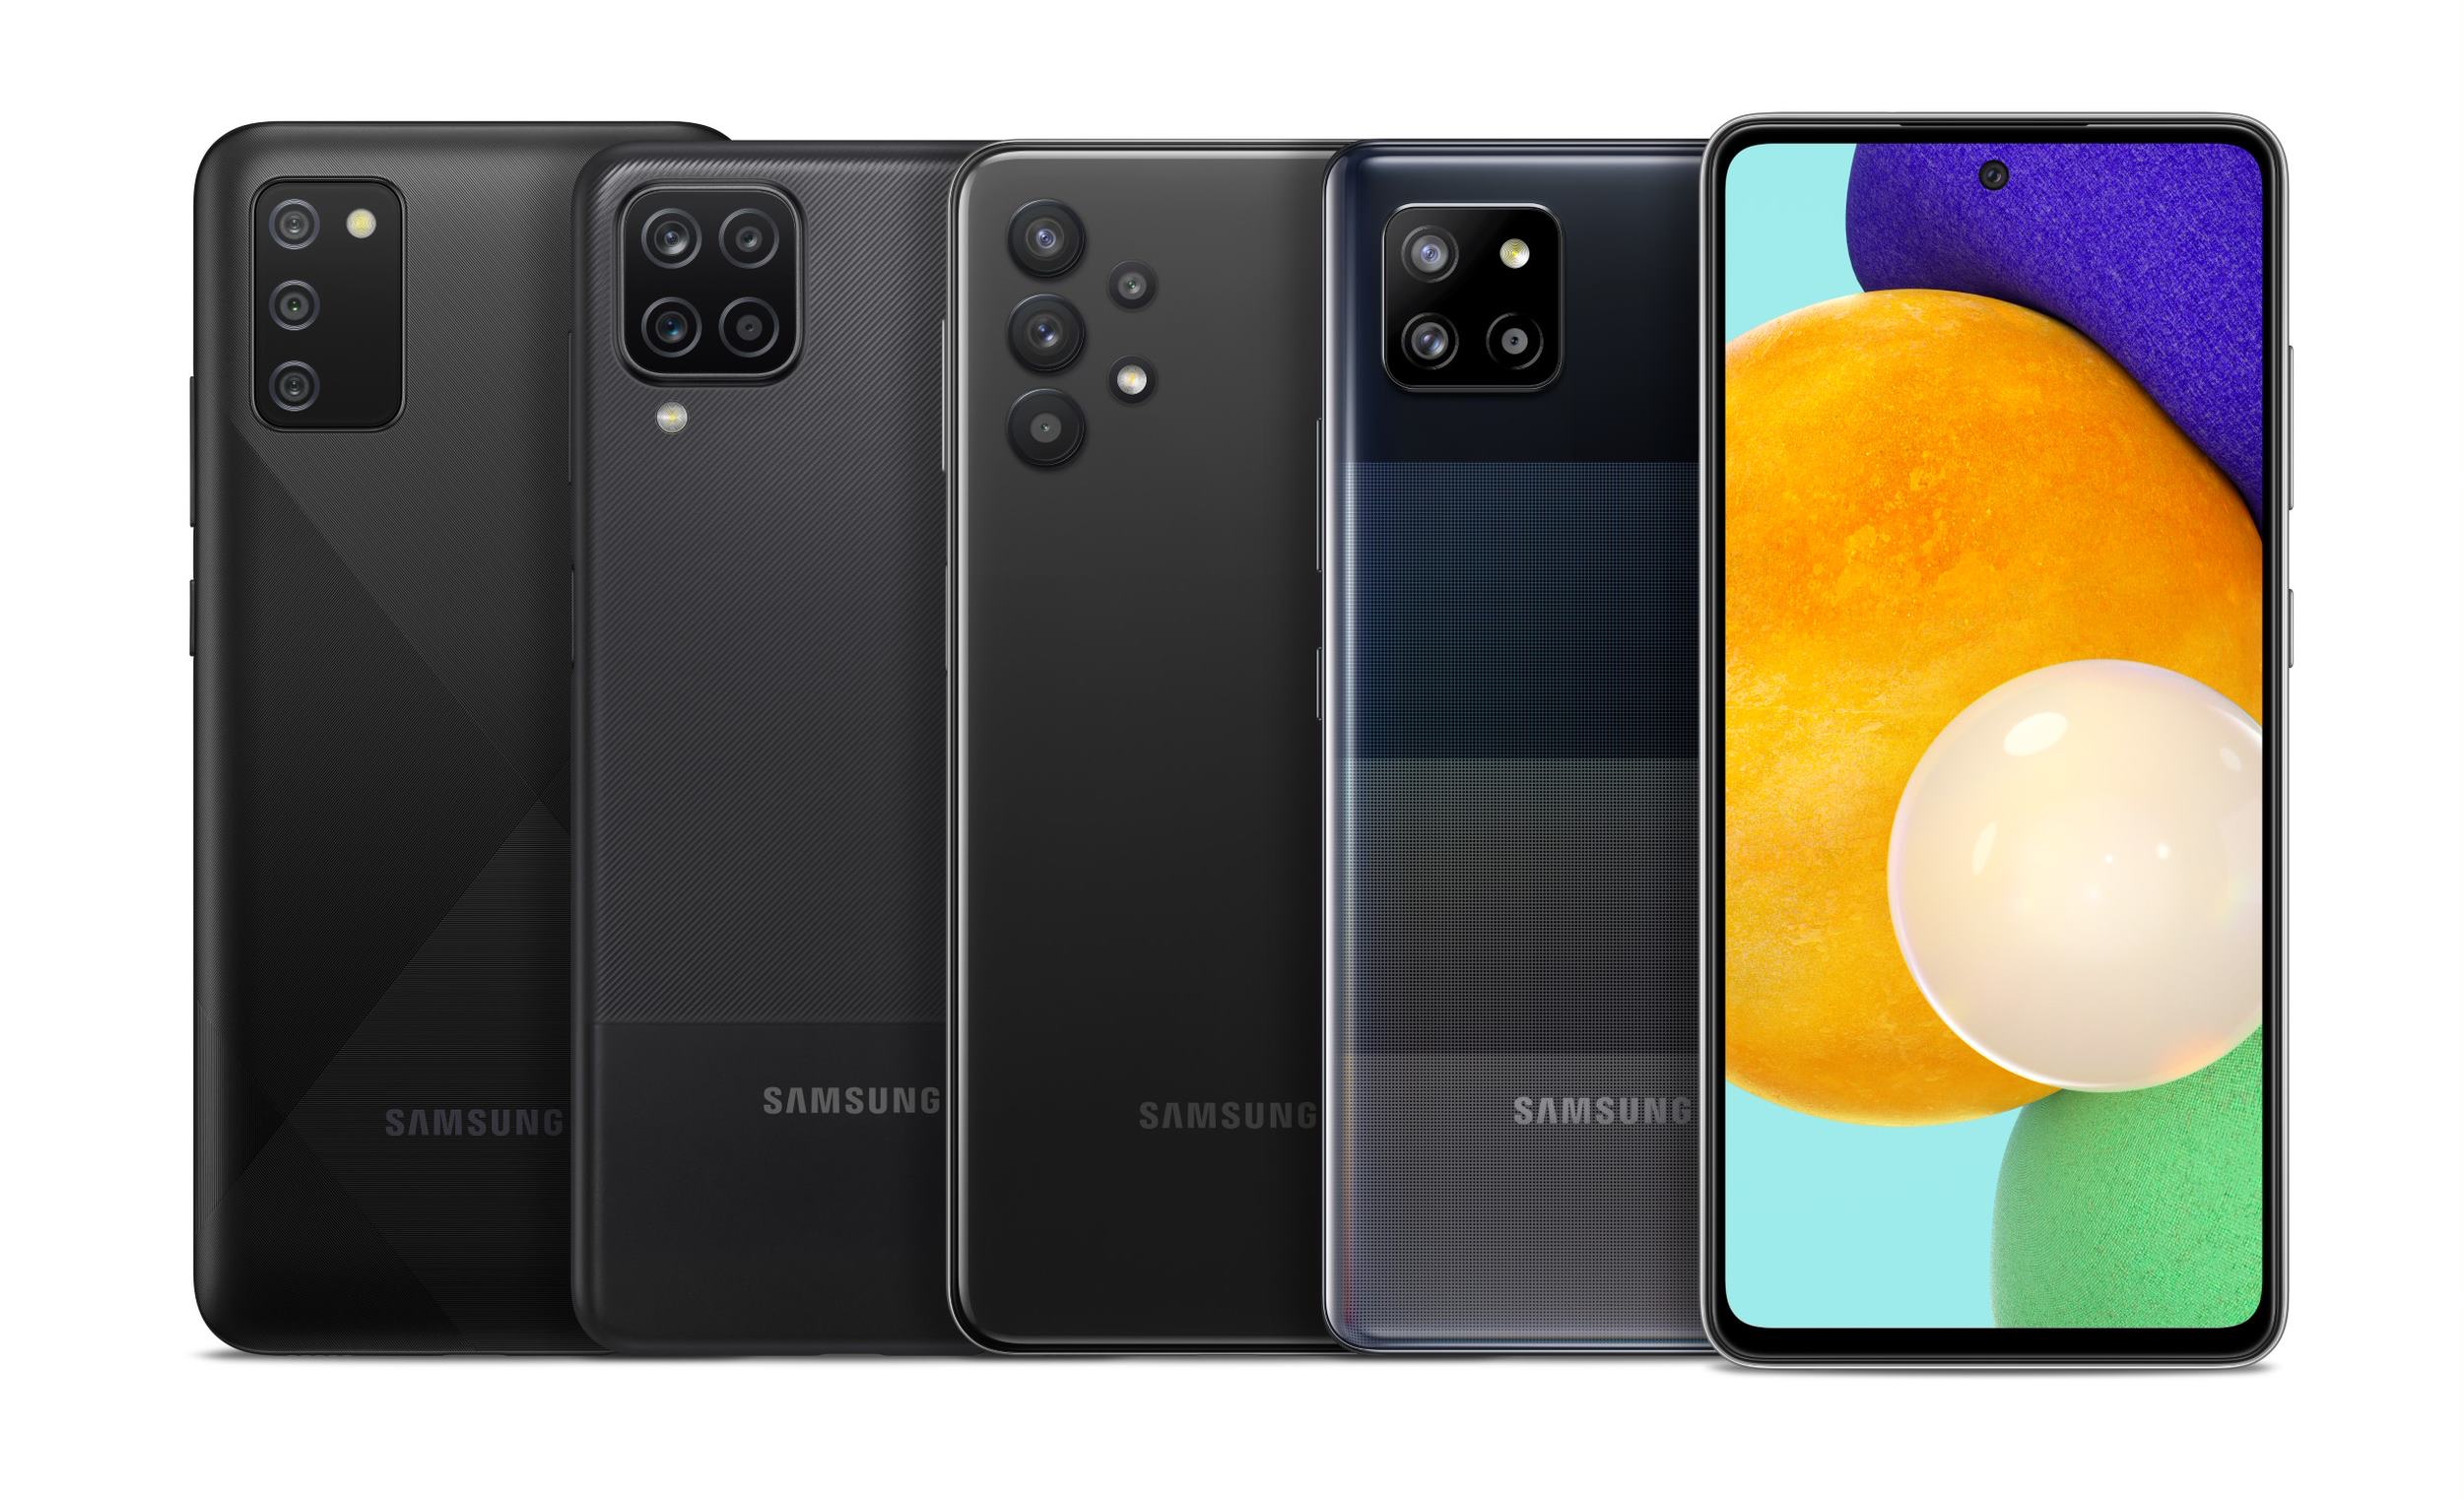 Джерело: Samsung у 2022 році випустить 64 нових моделей смартфонів та планшетів, 20 з них працюватимуть на чіпах Exynos із графікою AMD